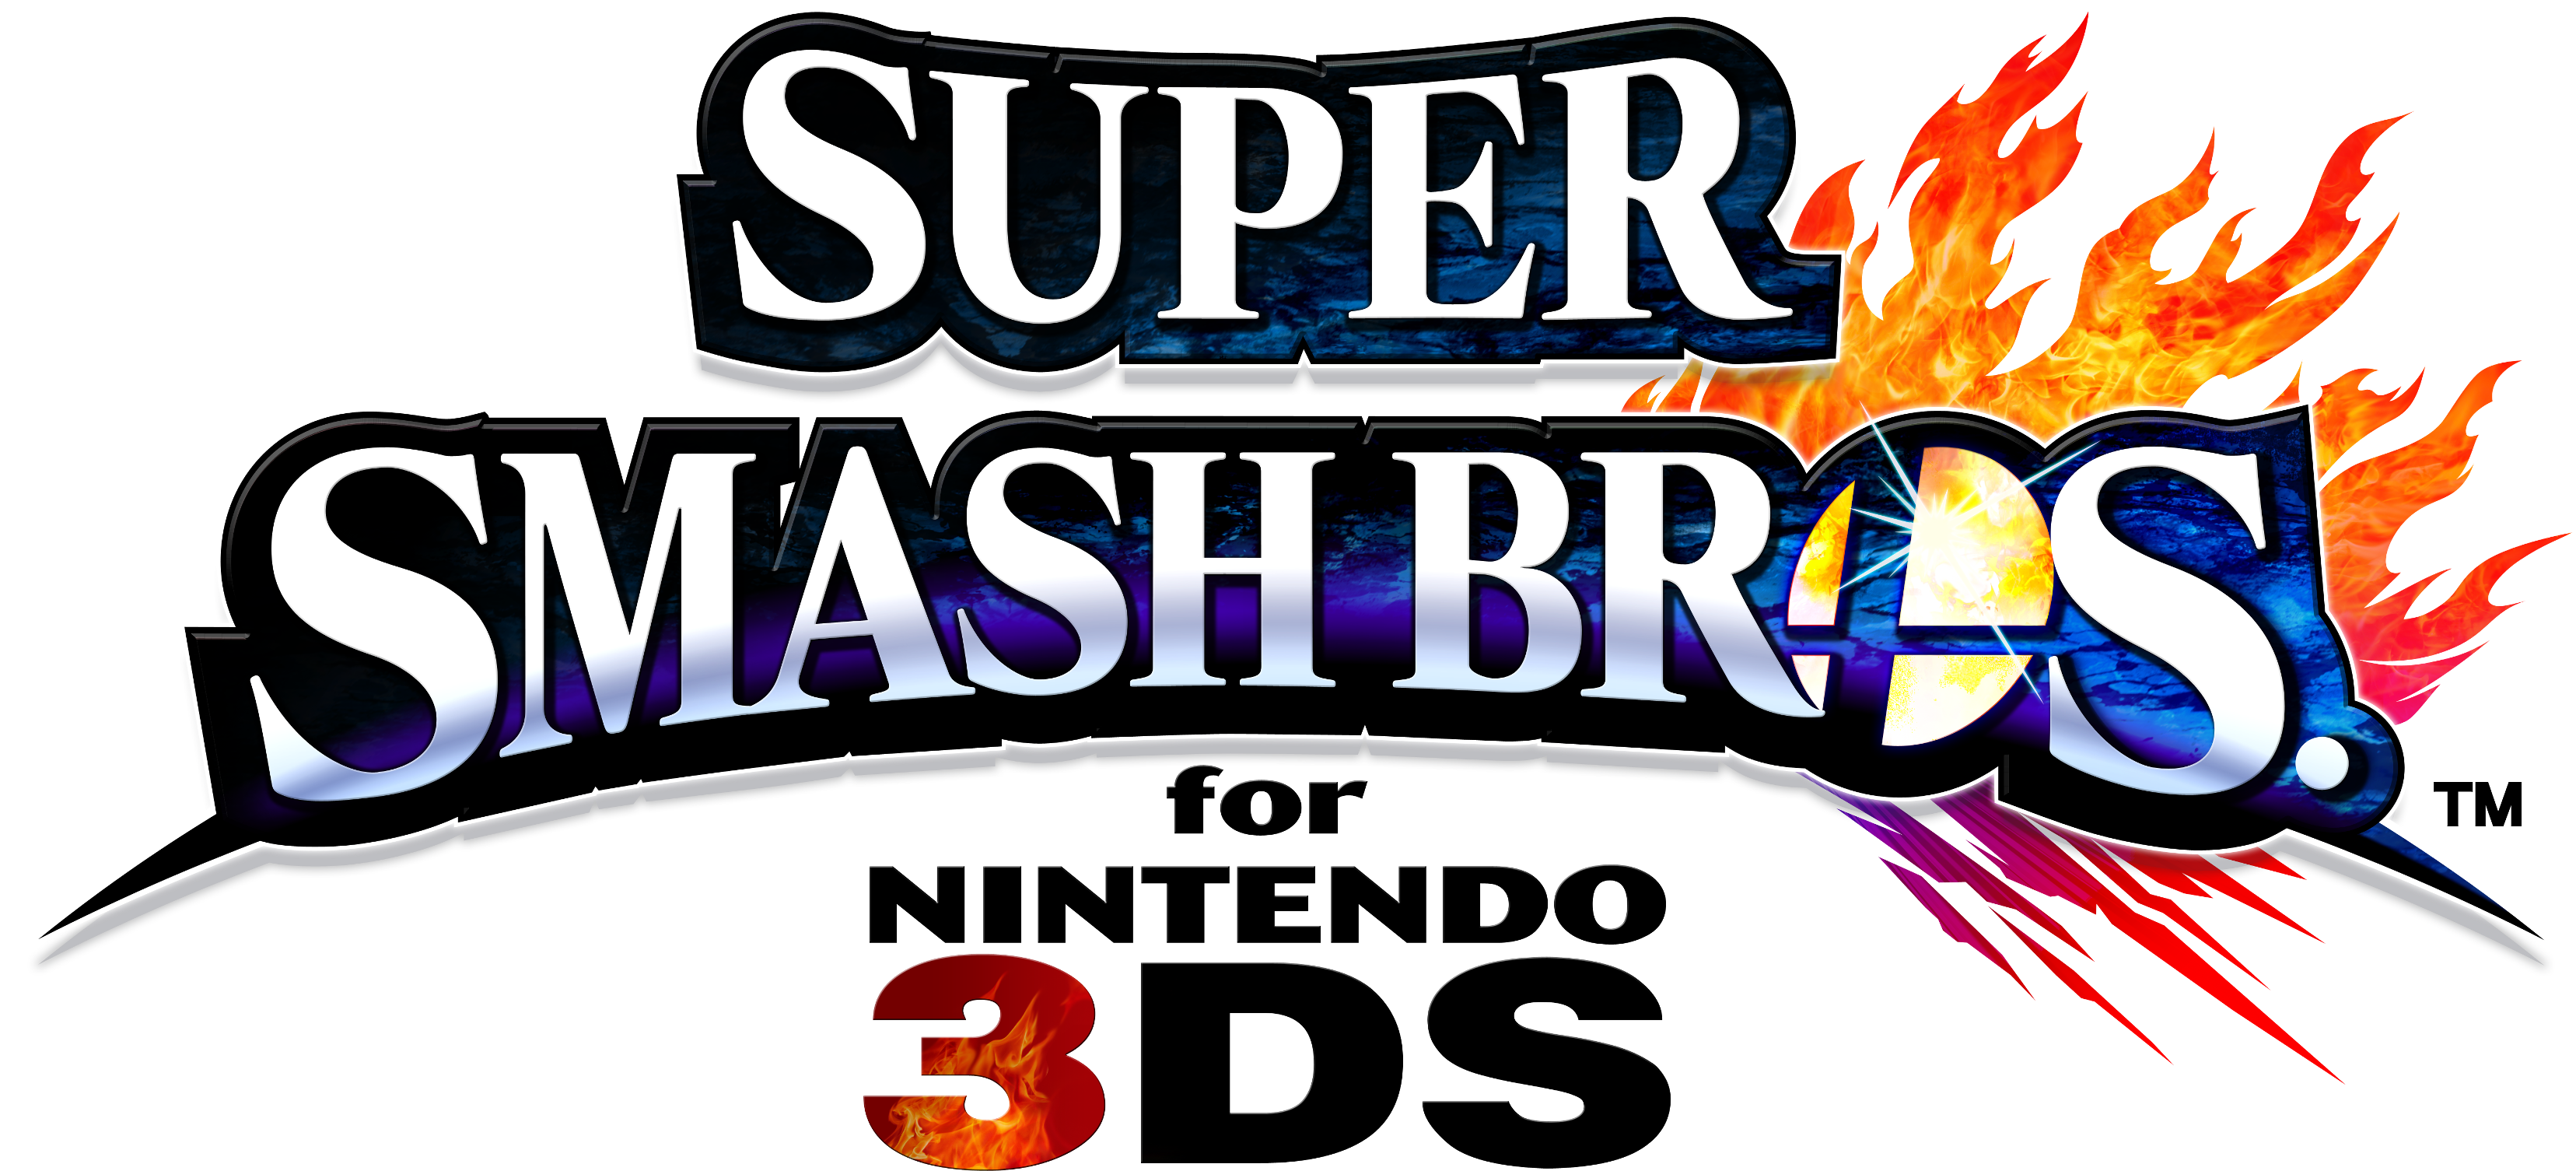 Super Smash Bros For Nintendo 3ds Logo - Super Smash Bros. For Nintendo 3ds And Wii U Clipart (3312x1505), Png Download